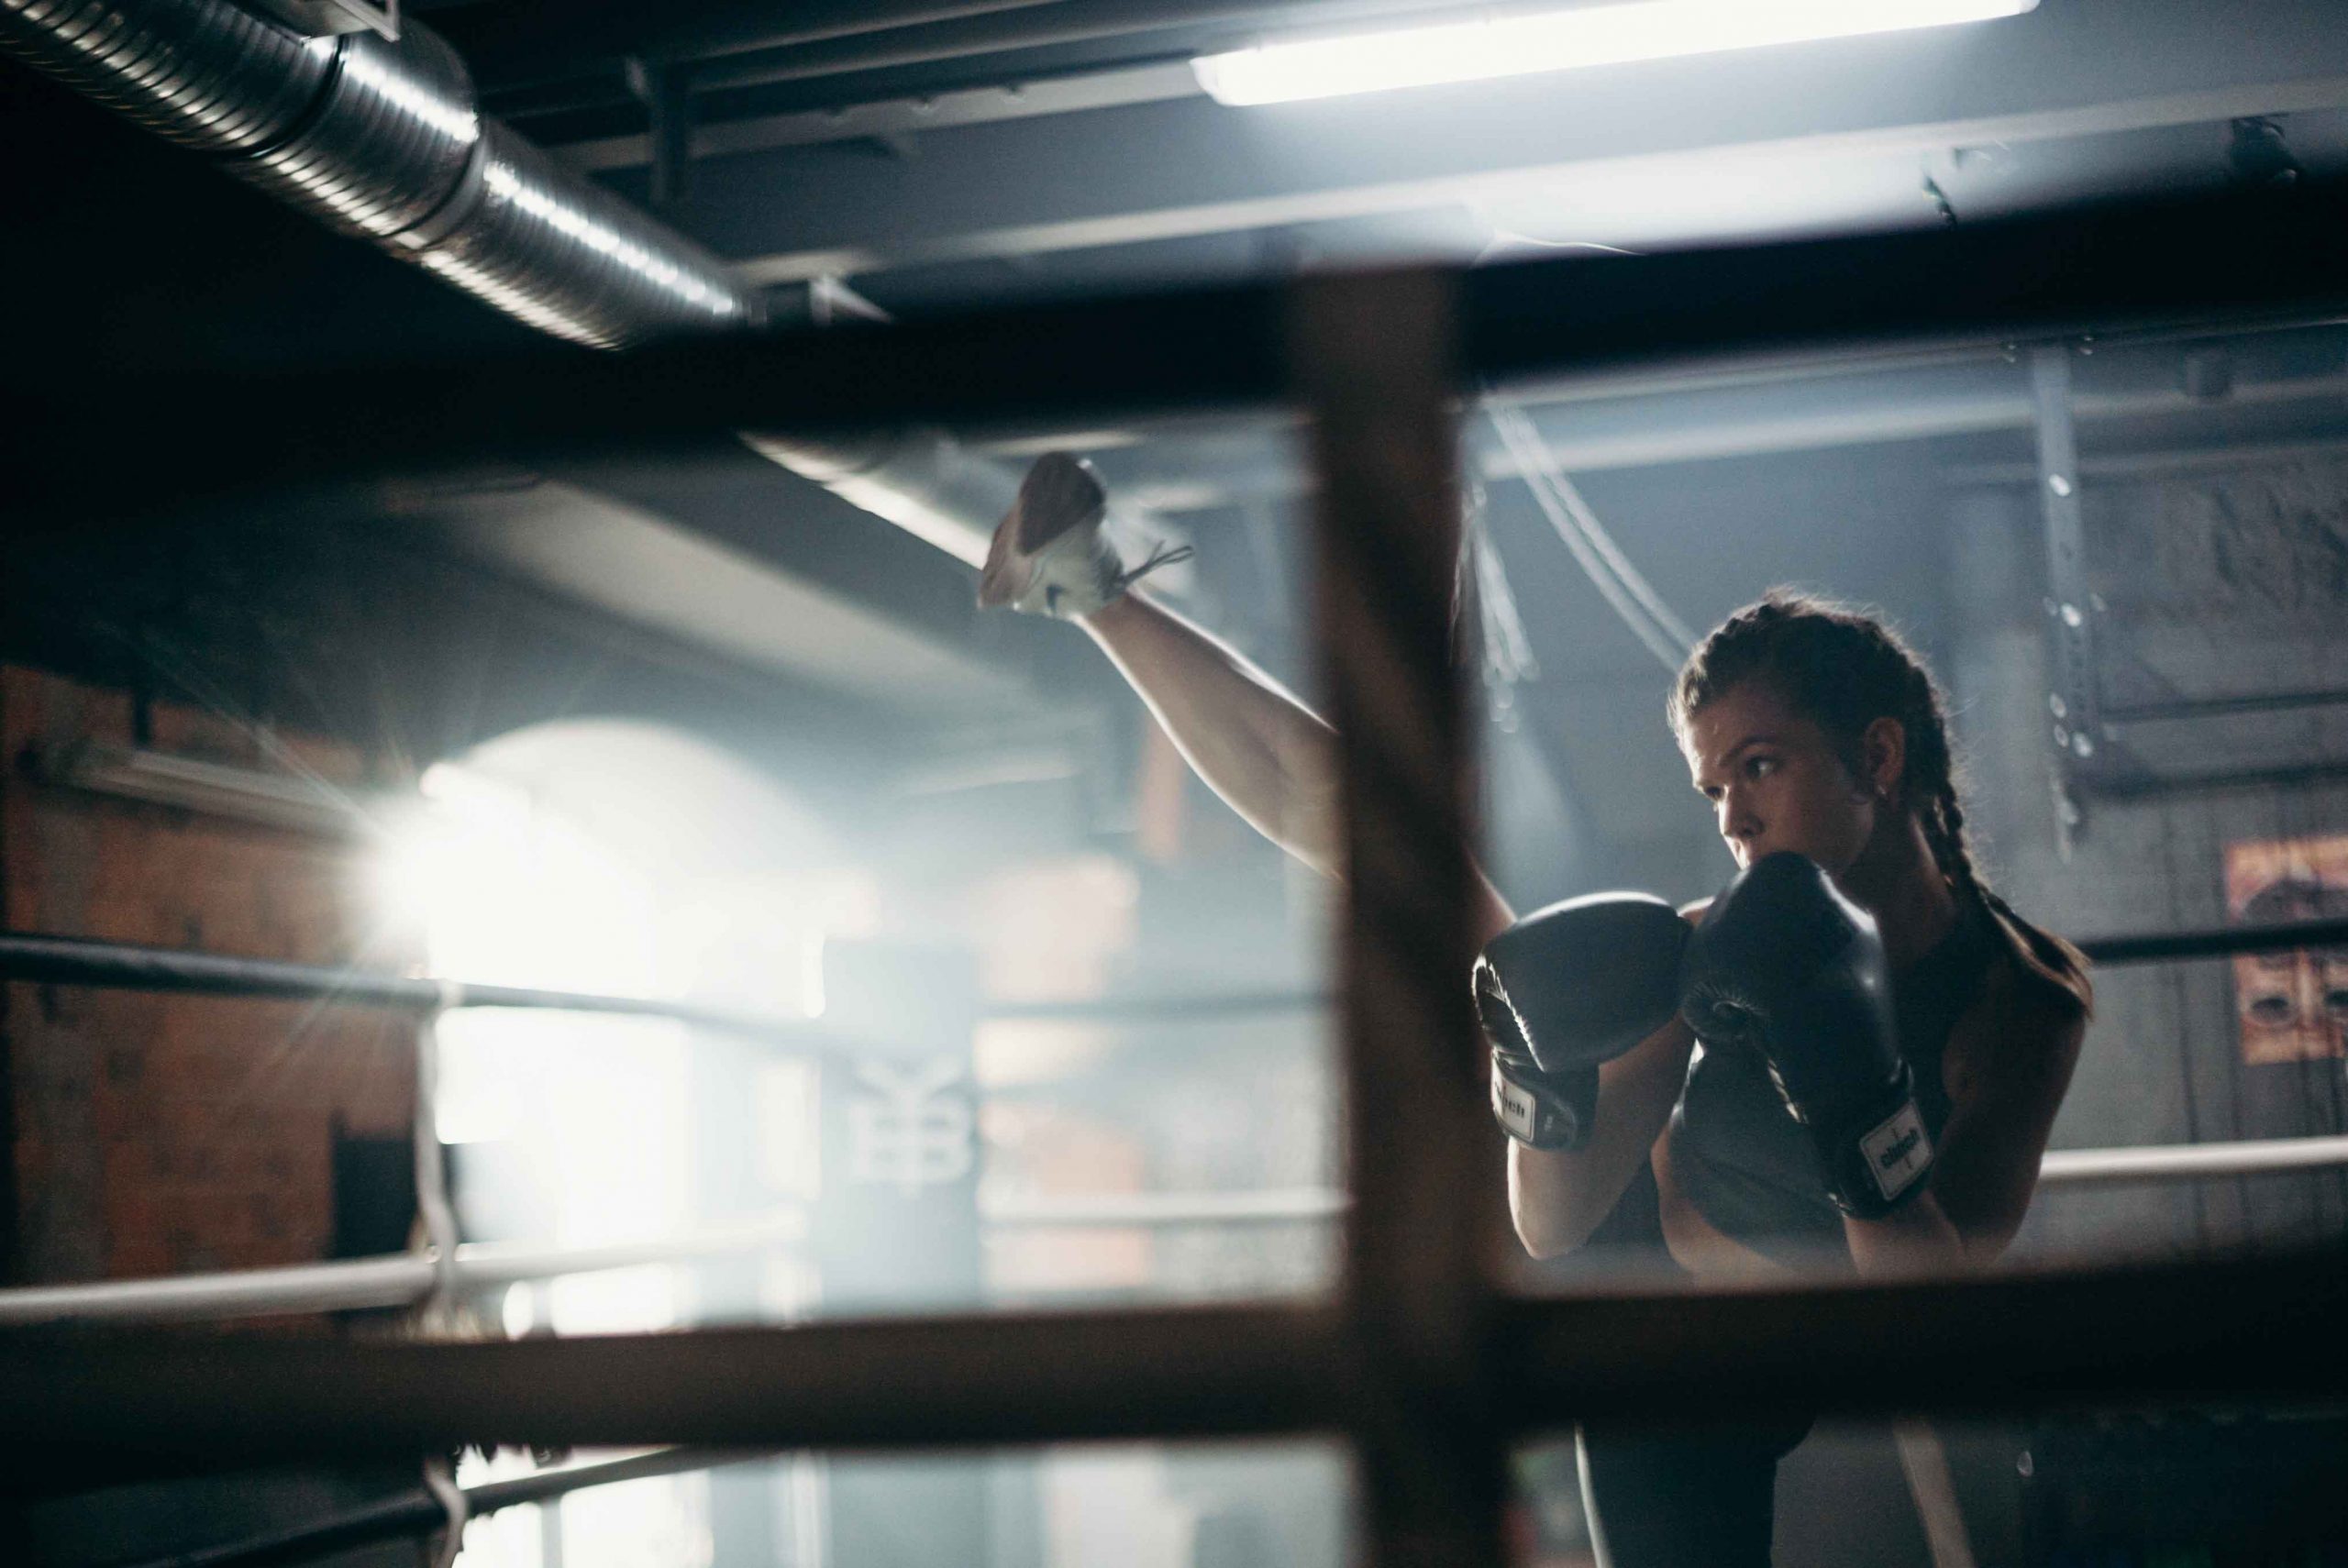 Kick boxing, ¿qué es y cuáles son sus beneficios?